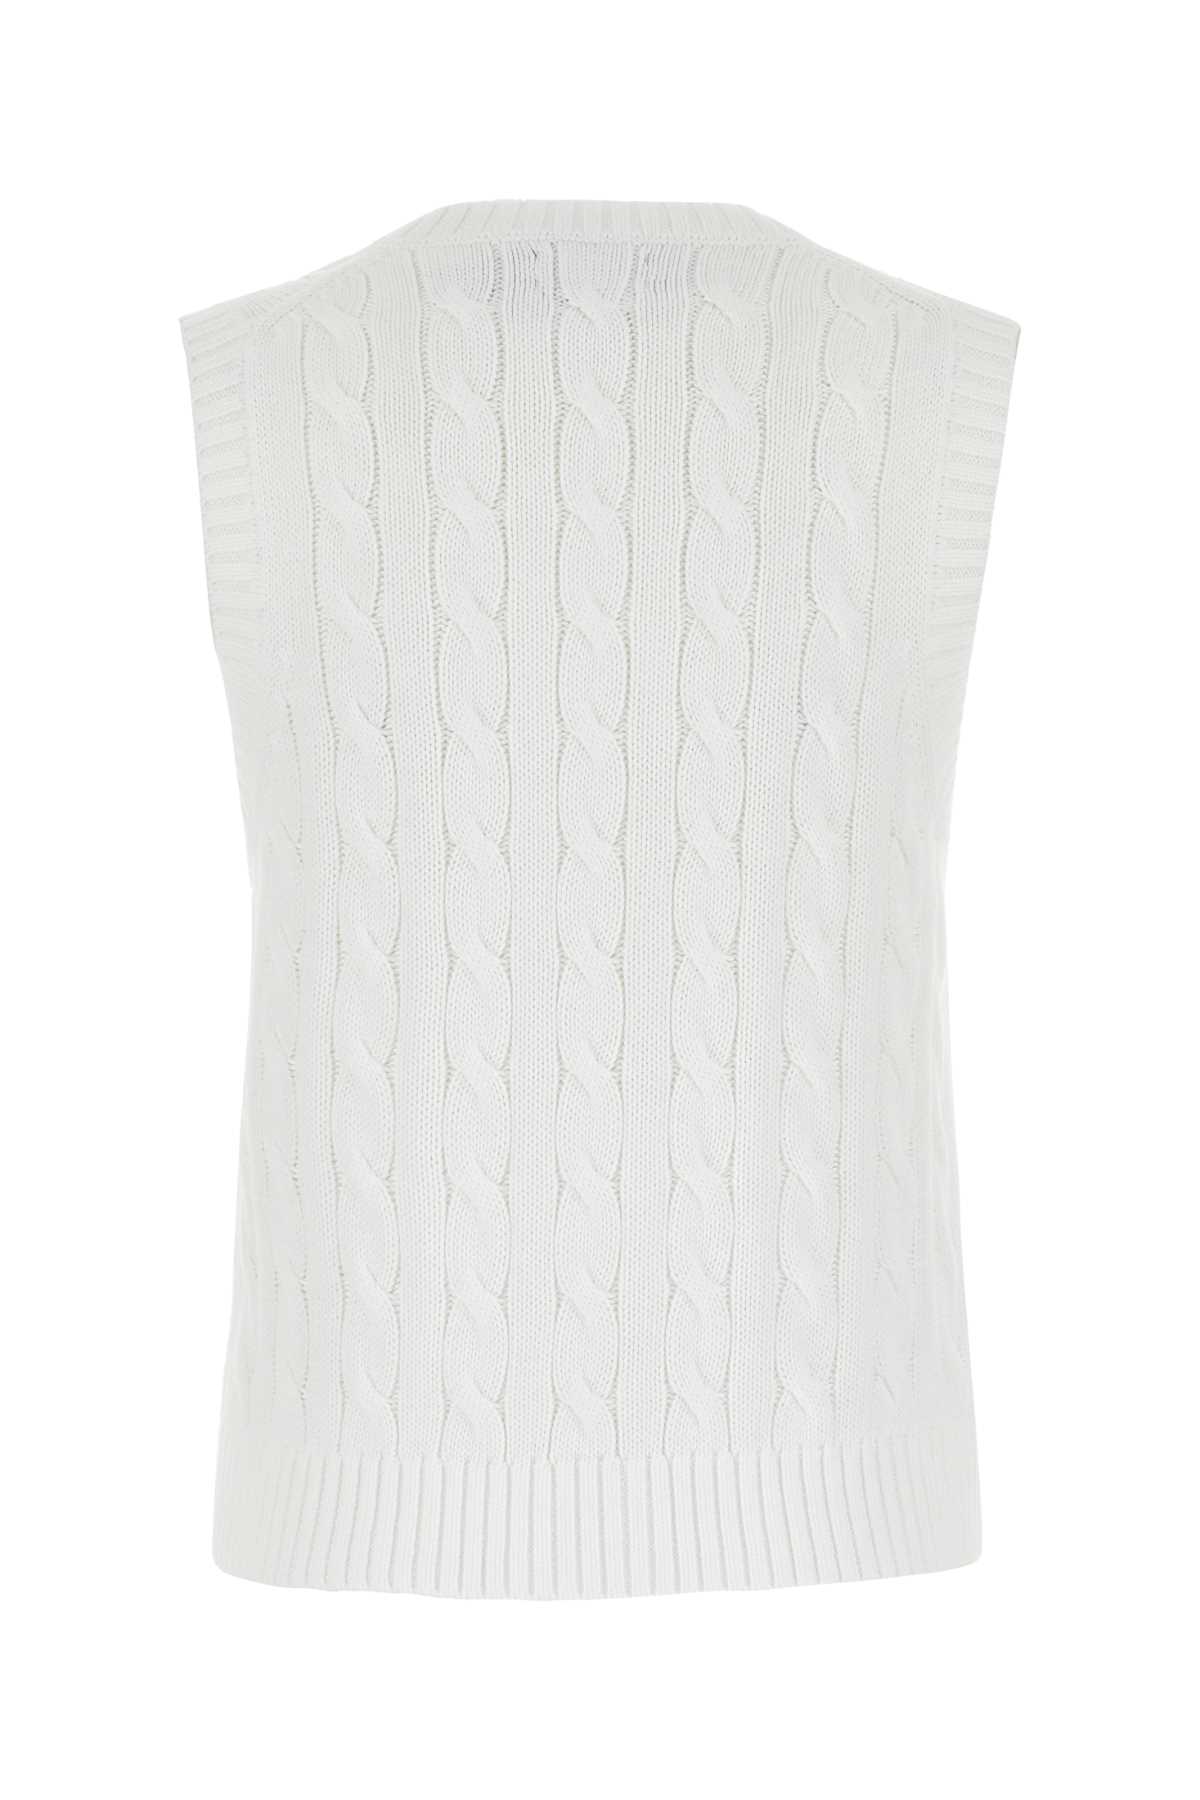 Shop Polo Ralph Lauren White Cotton Vest